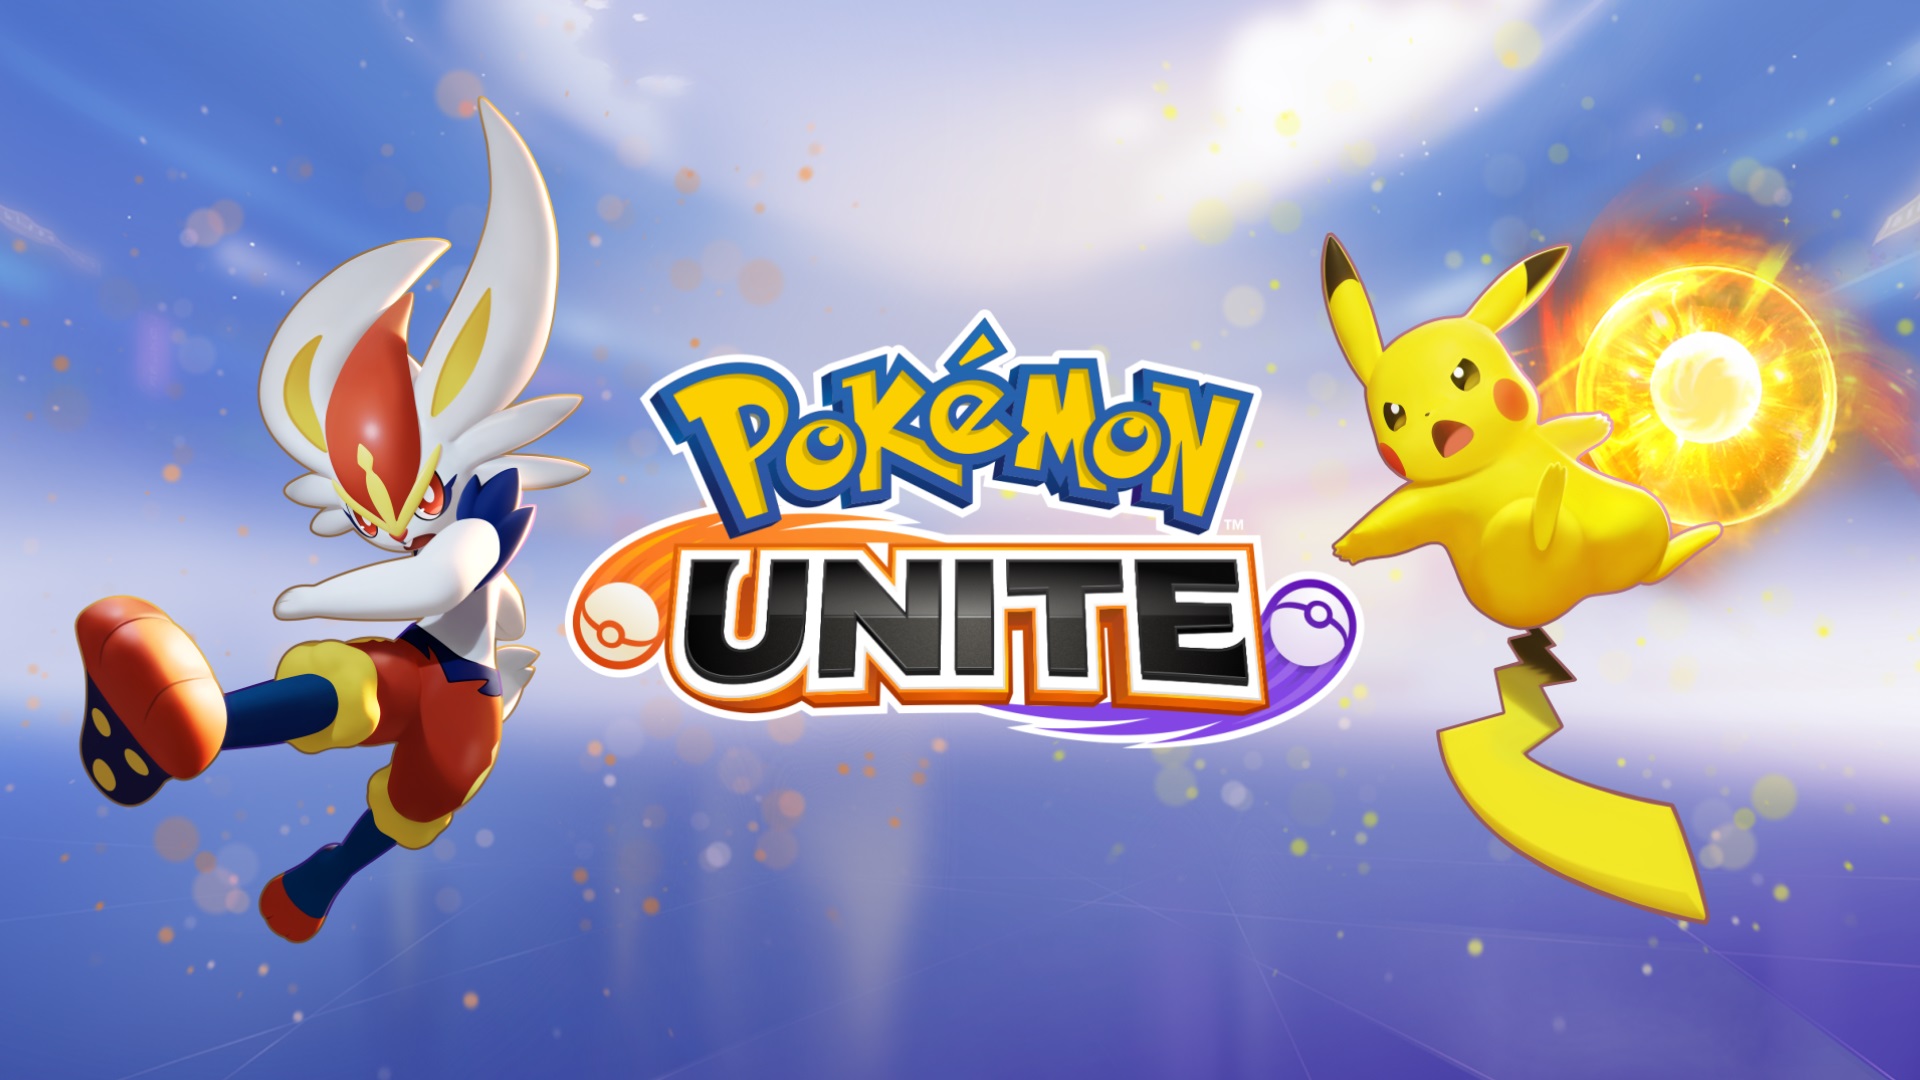 I-Pokemon Unite 07 15 21 1